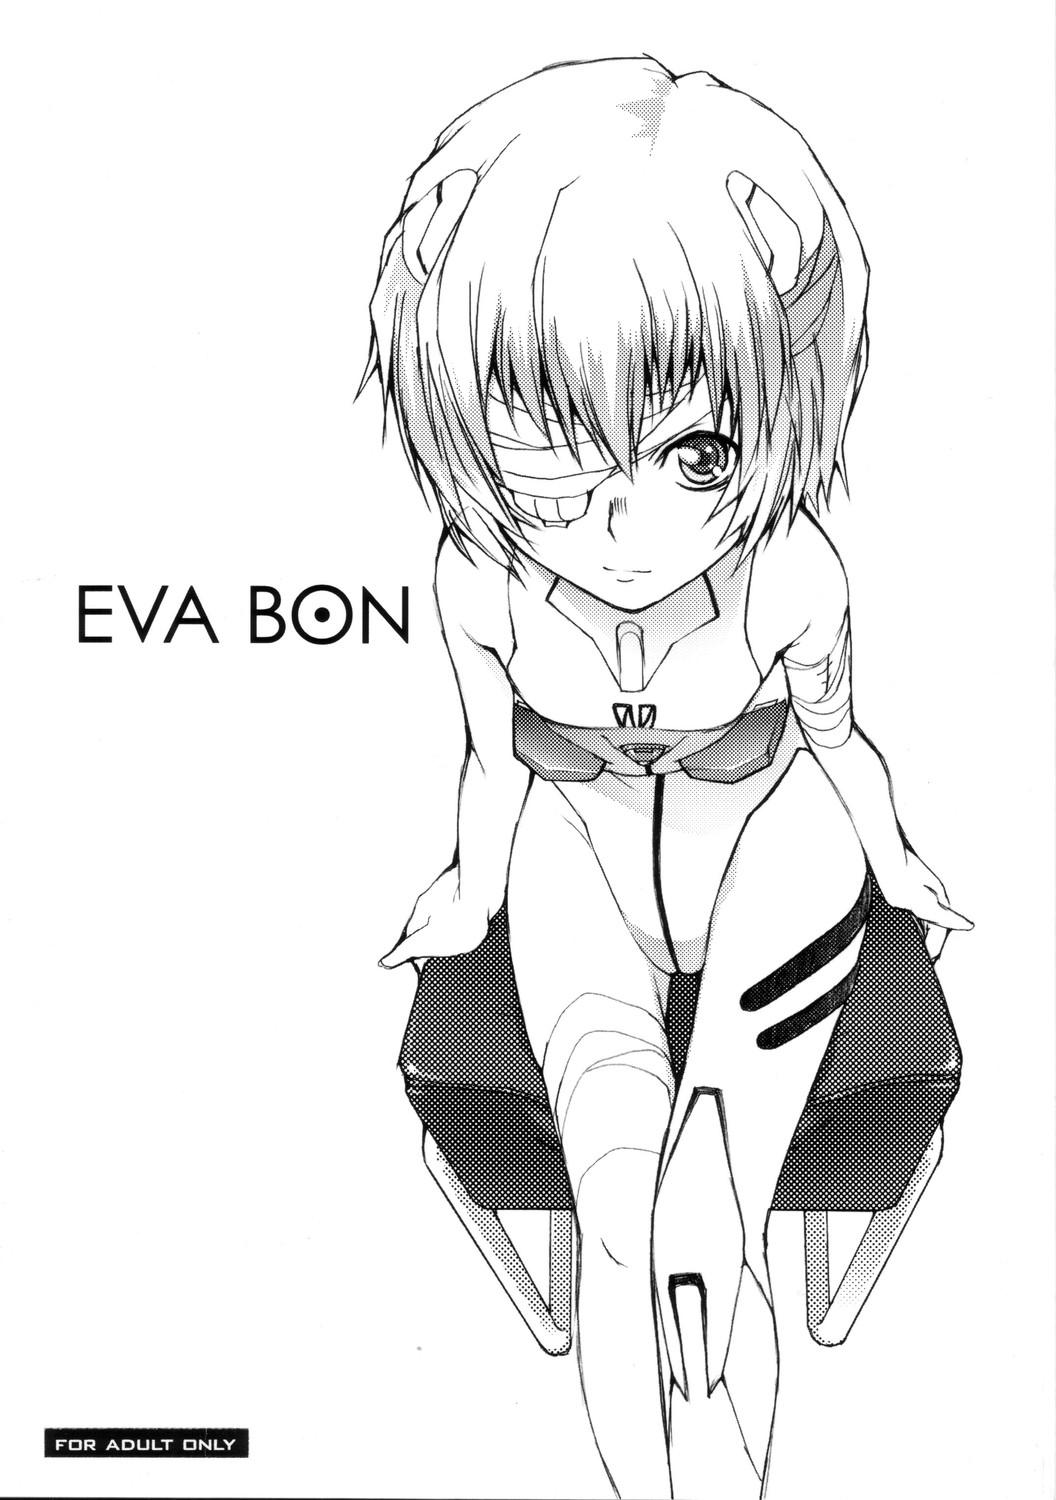 EVA BON 0